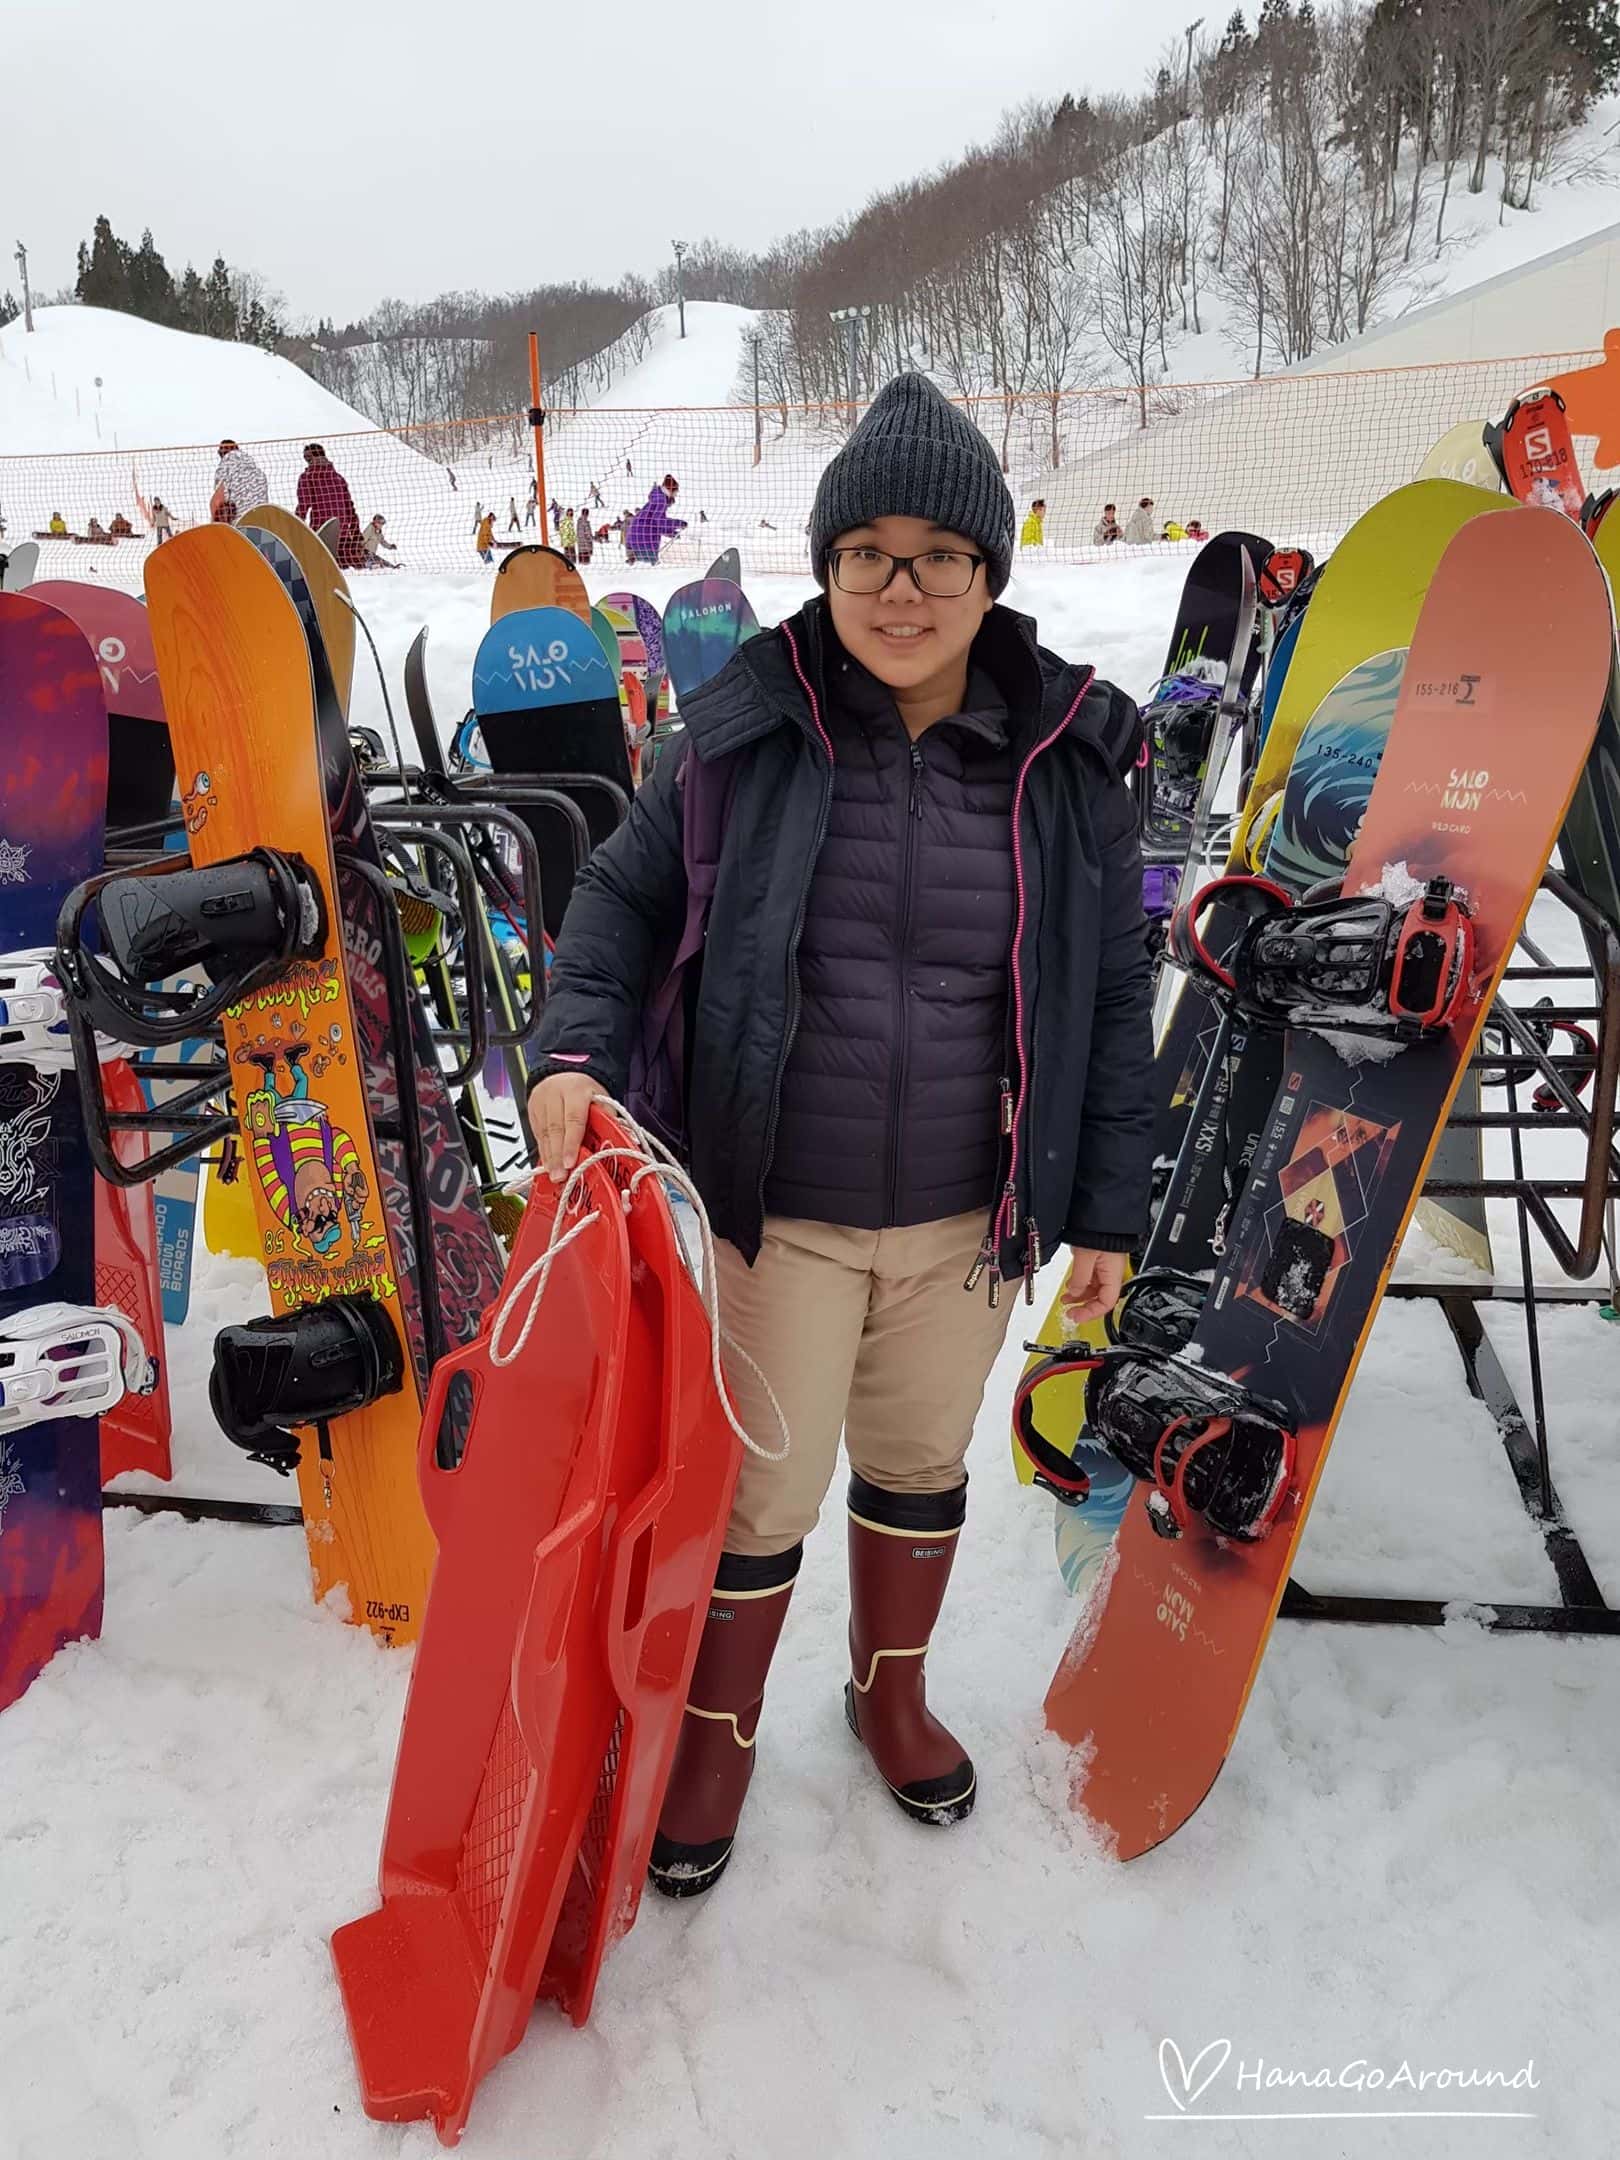 เล่นสกีหิมะที่ญี่ปุ่น รีวิวเที่ยวเมืองหิมะ เล่นสโนว์สุดฟิน in Gala Yuzawa Snow Resort ที่เมืองเอจิโหงะ-ยูซาว่า (Echigo-Yuzawa)